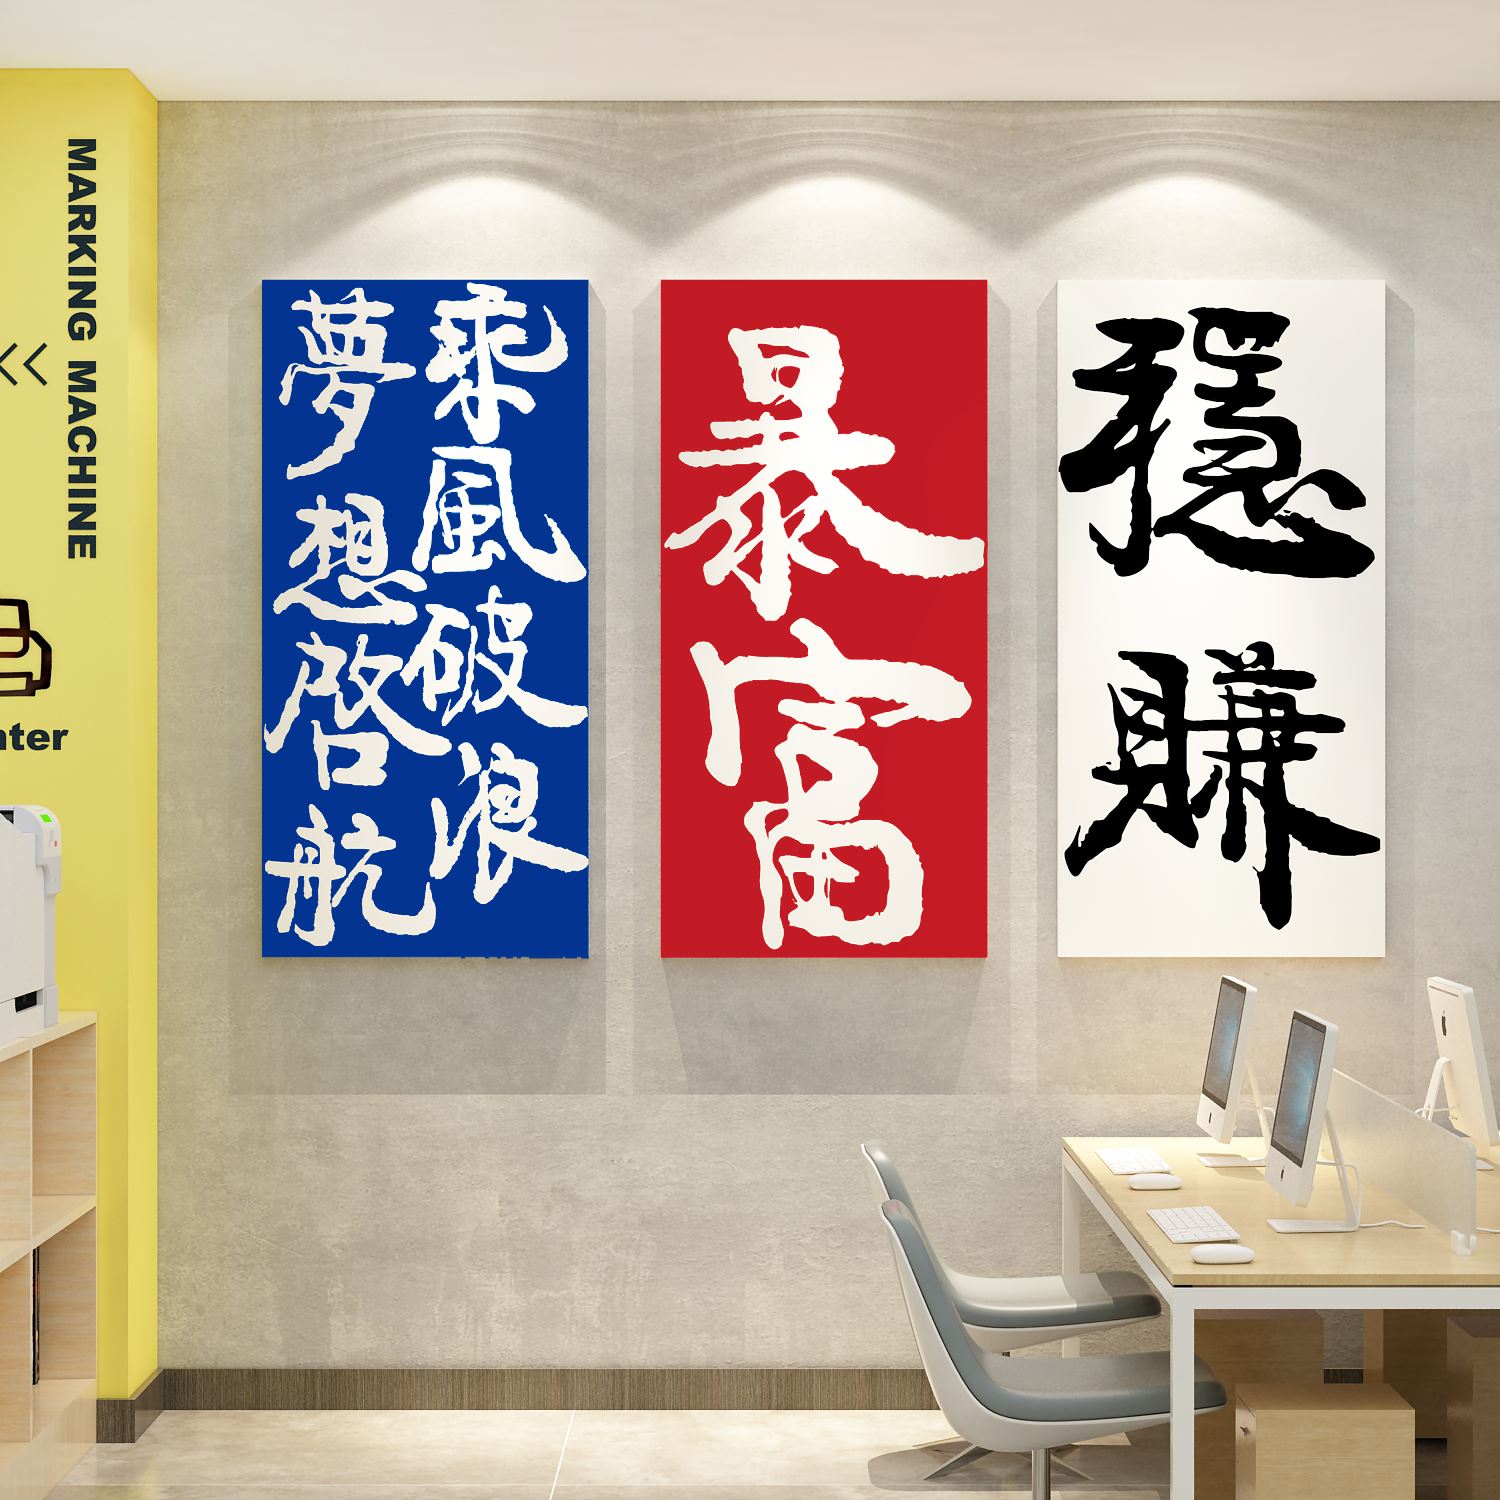 办公室墙面工位氛围装饰画企业文化励志标语贴纸公司会议布置背景